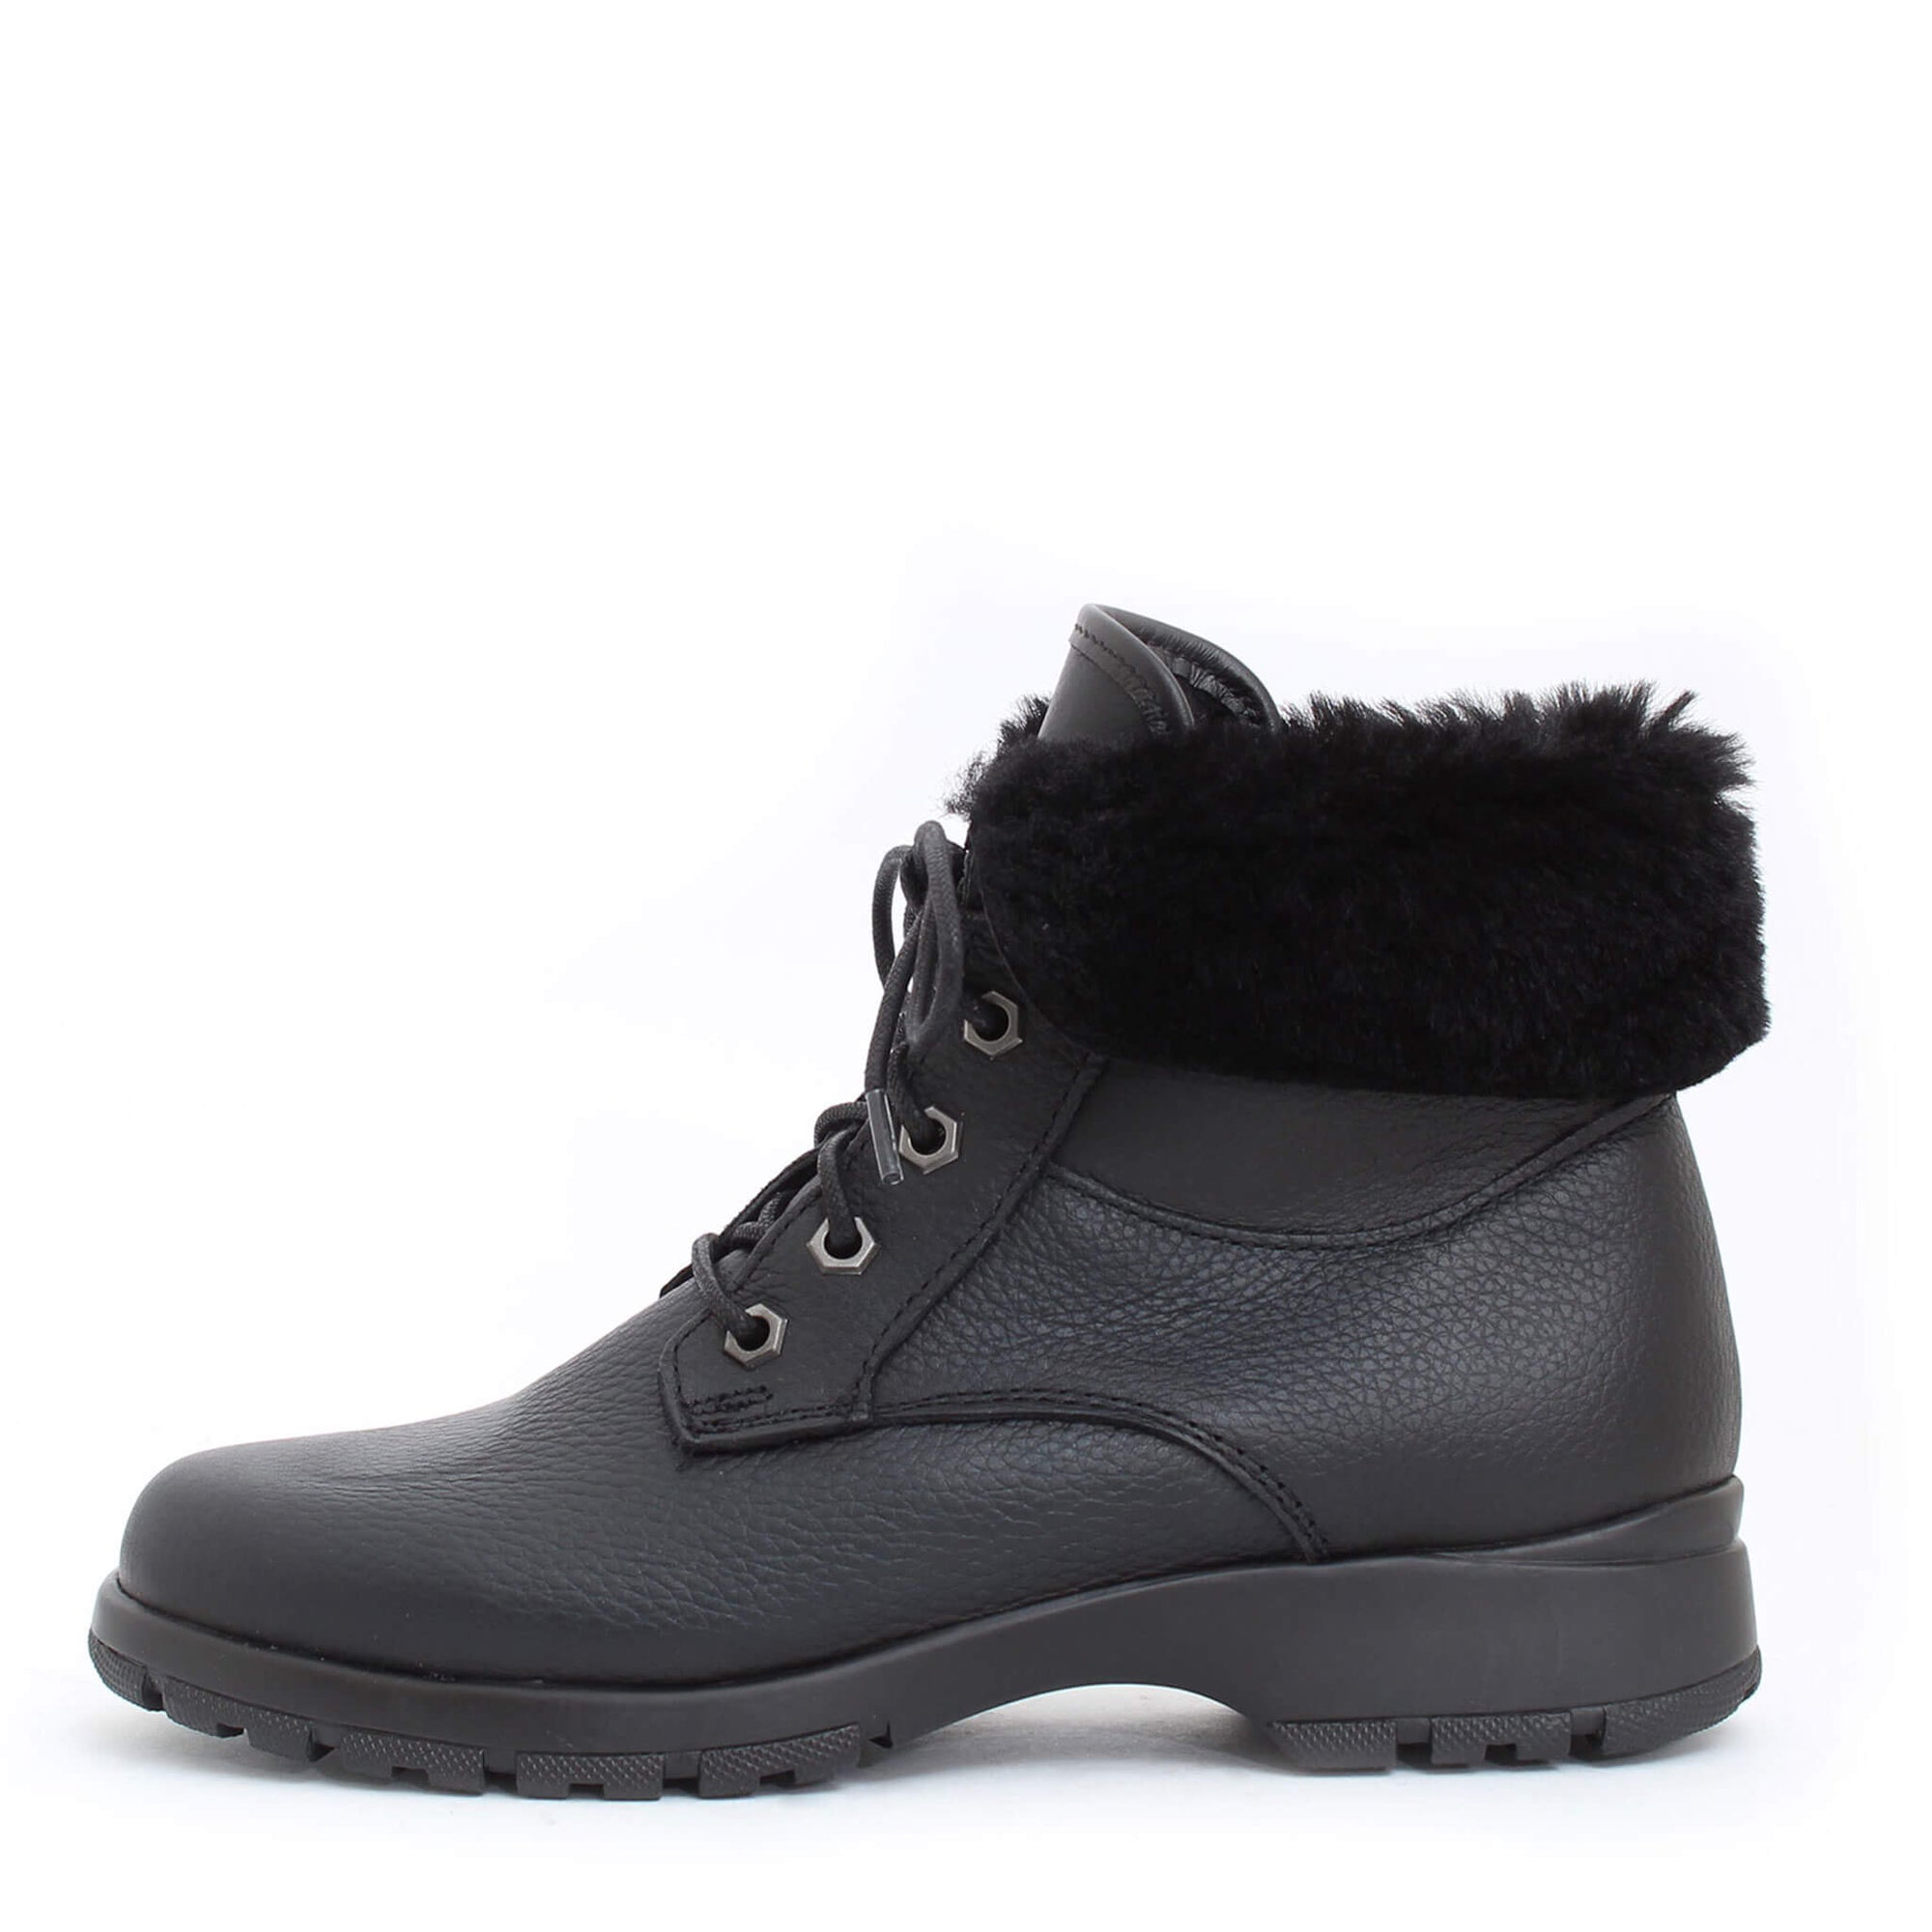 Minnesota-2 winter boot for women - Black